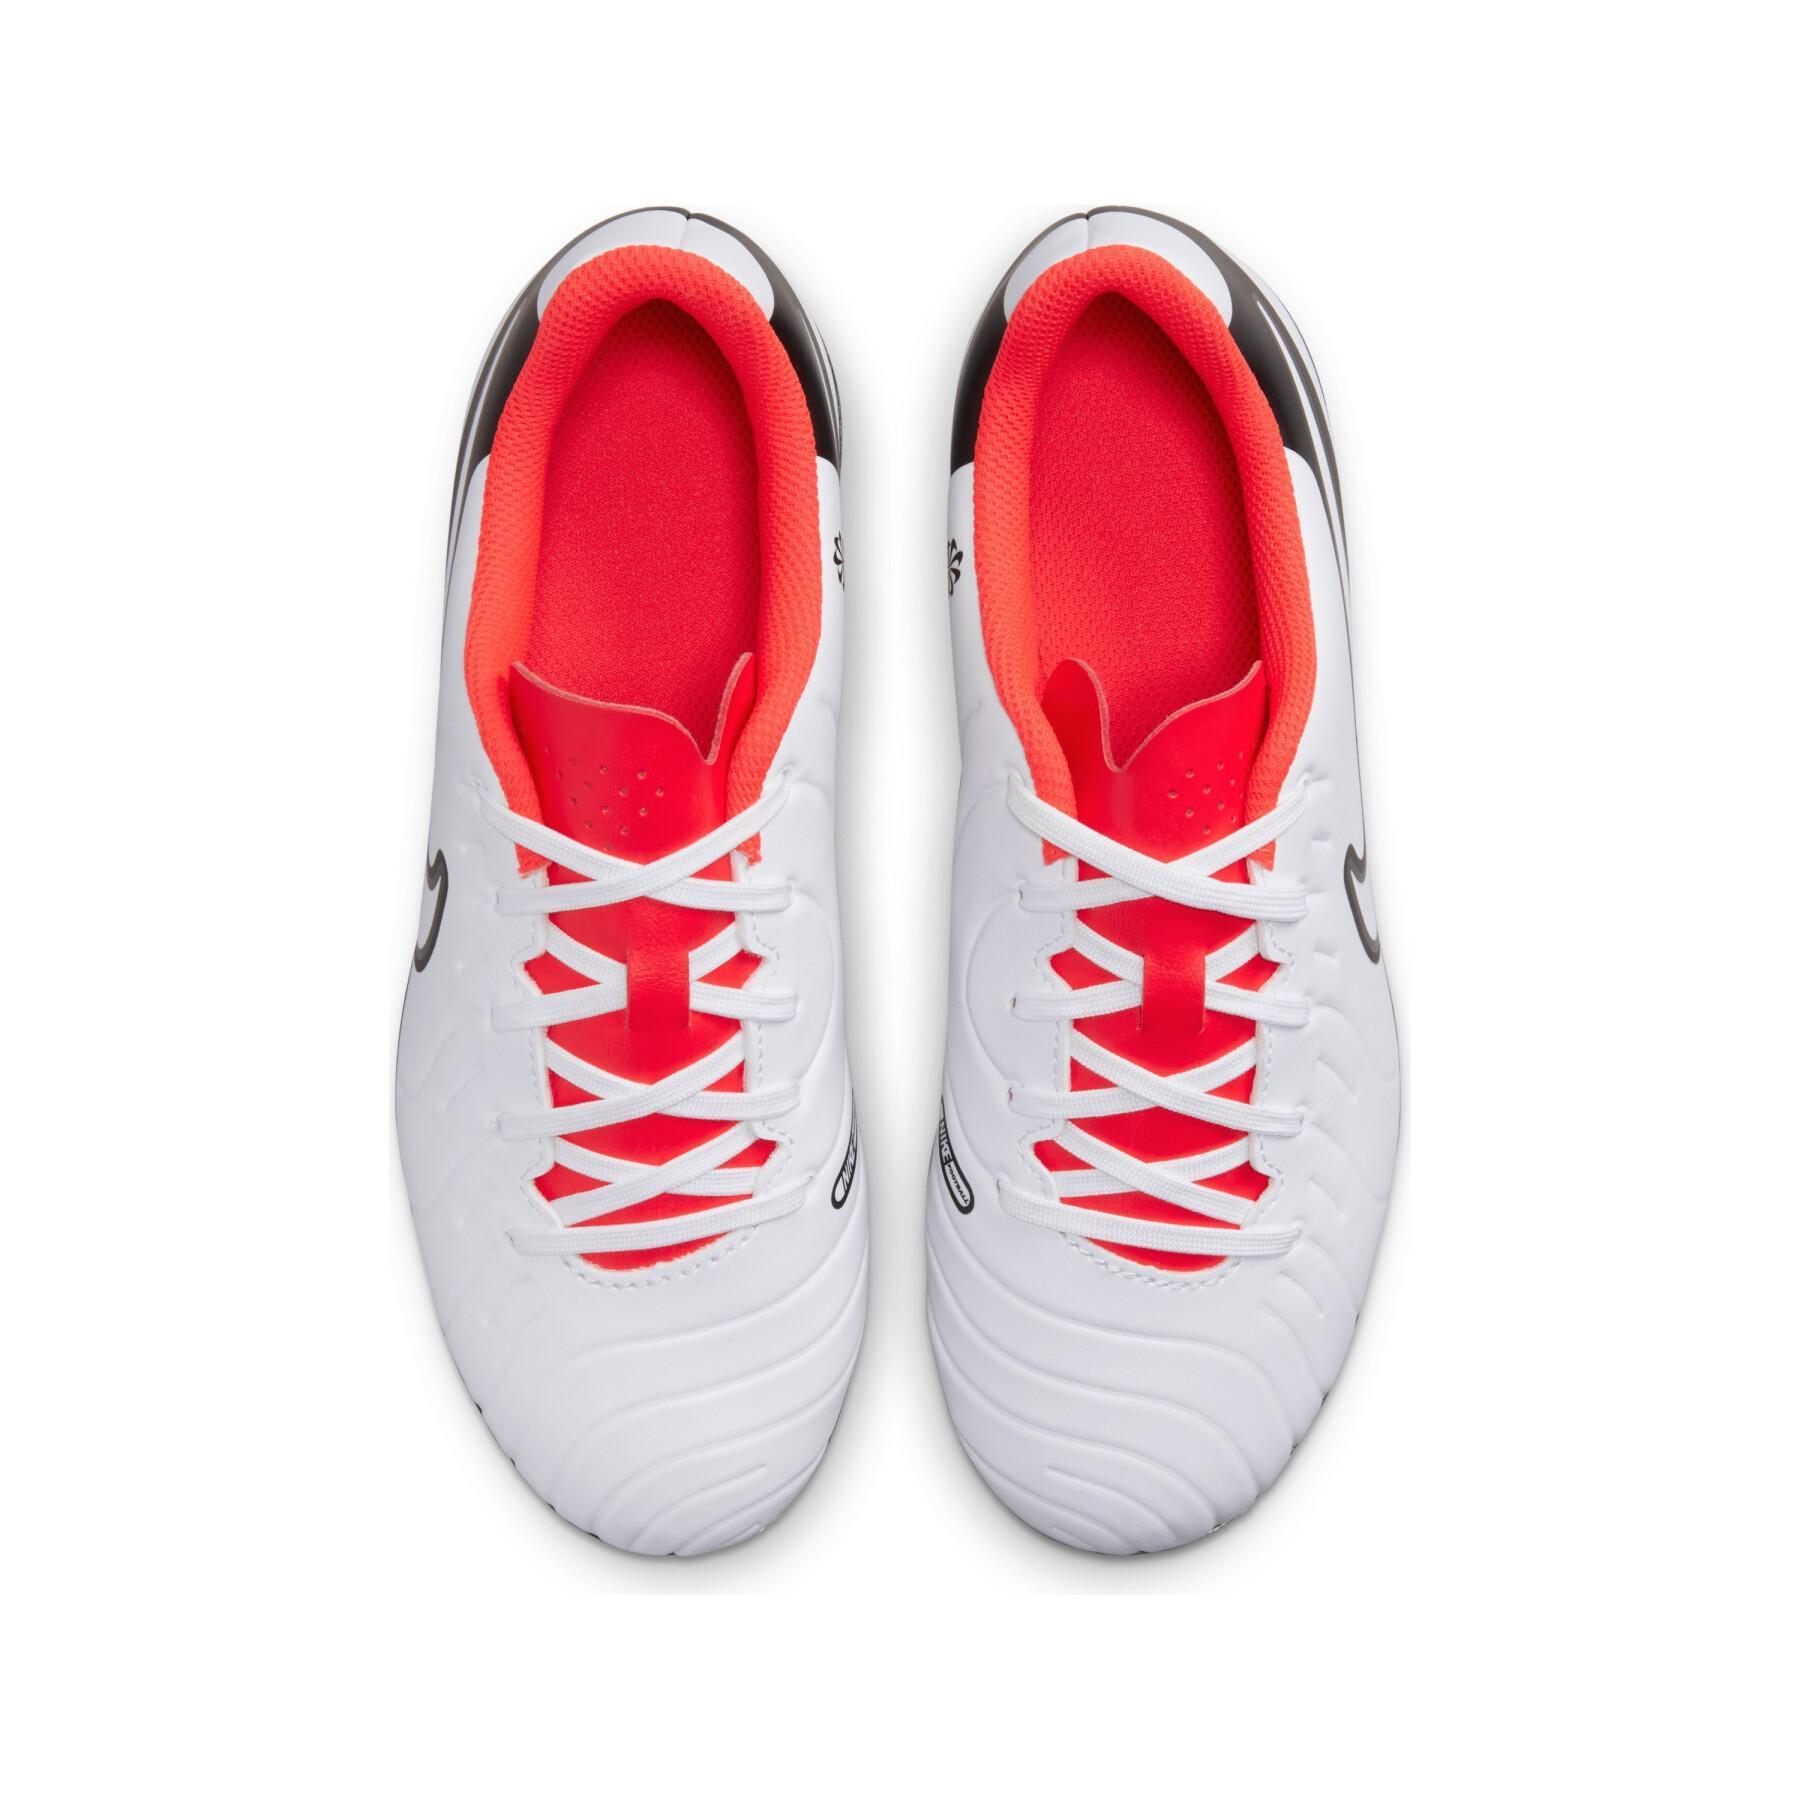 Chaussures de football enfant Nike Tiempo Legend 10 Club MG